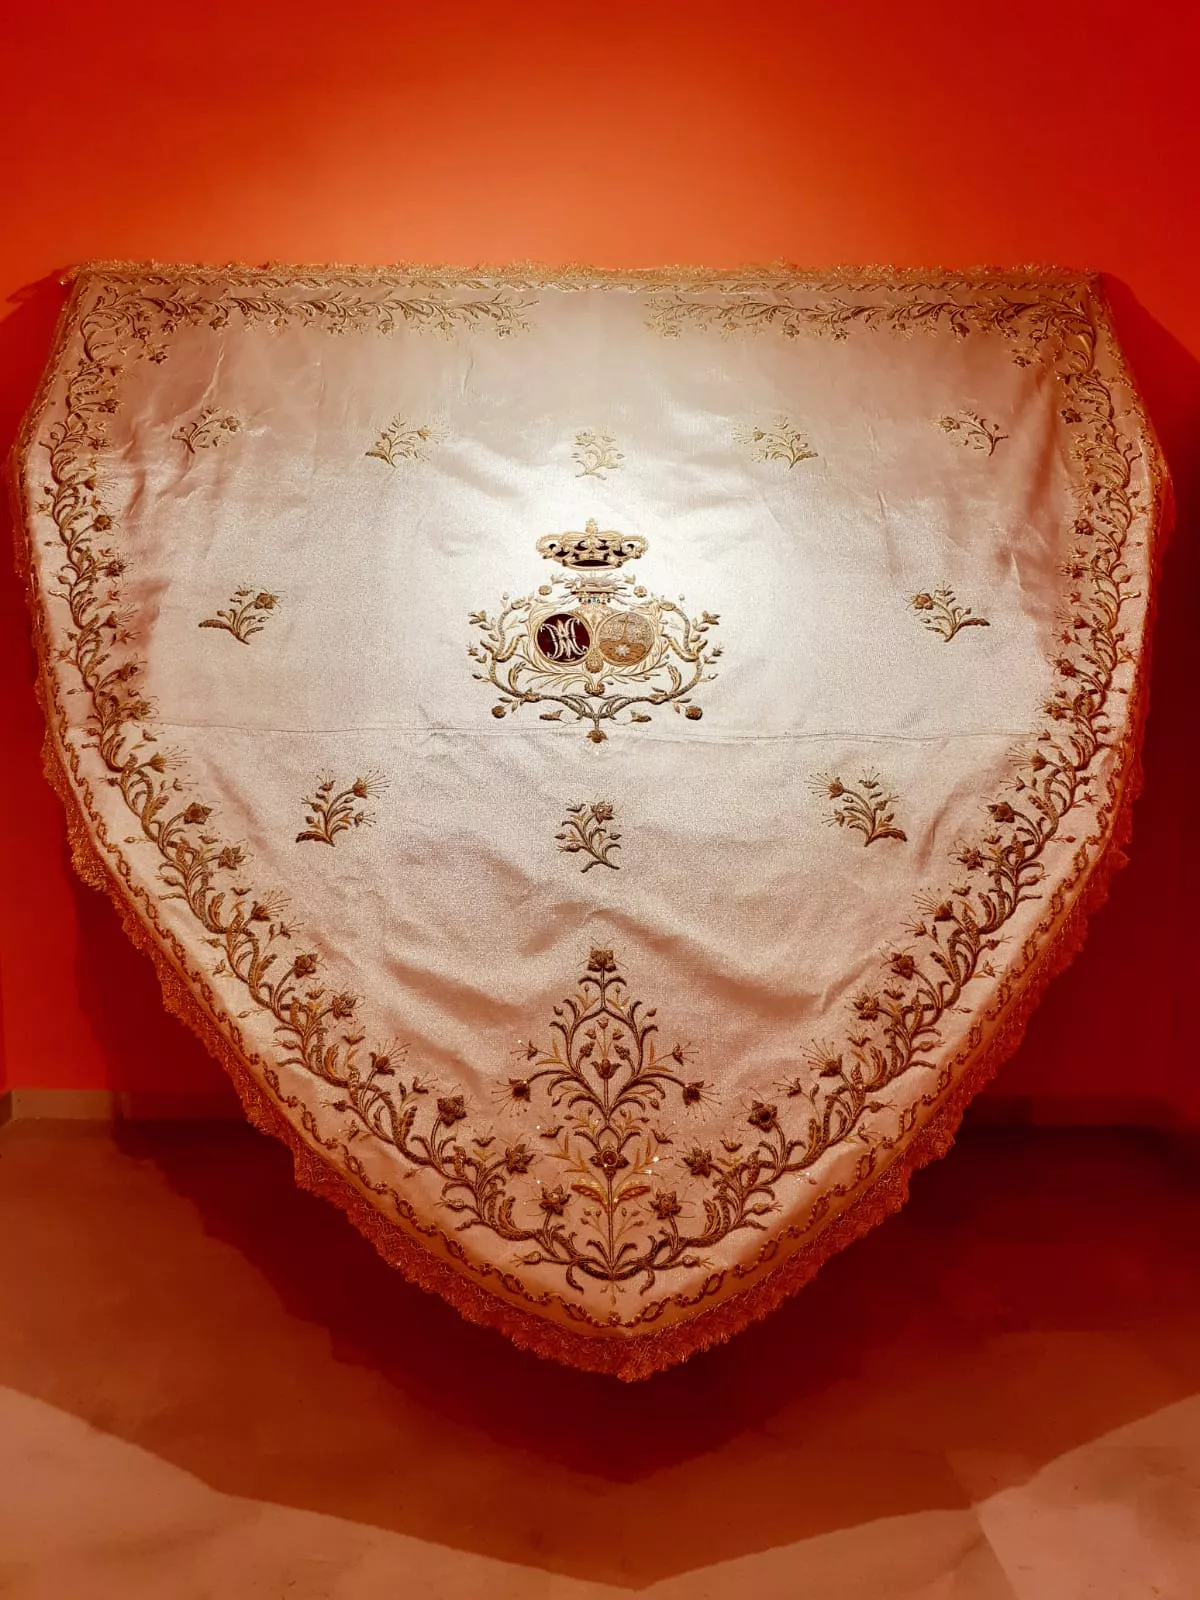 La pieza tiene bordados del siglo XVIII donados por unos hermanos